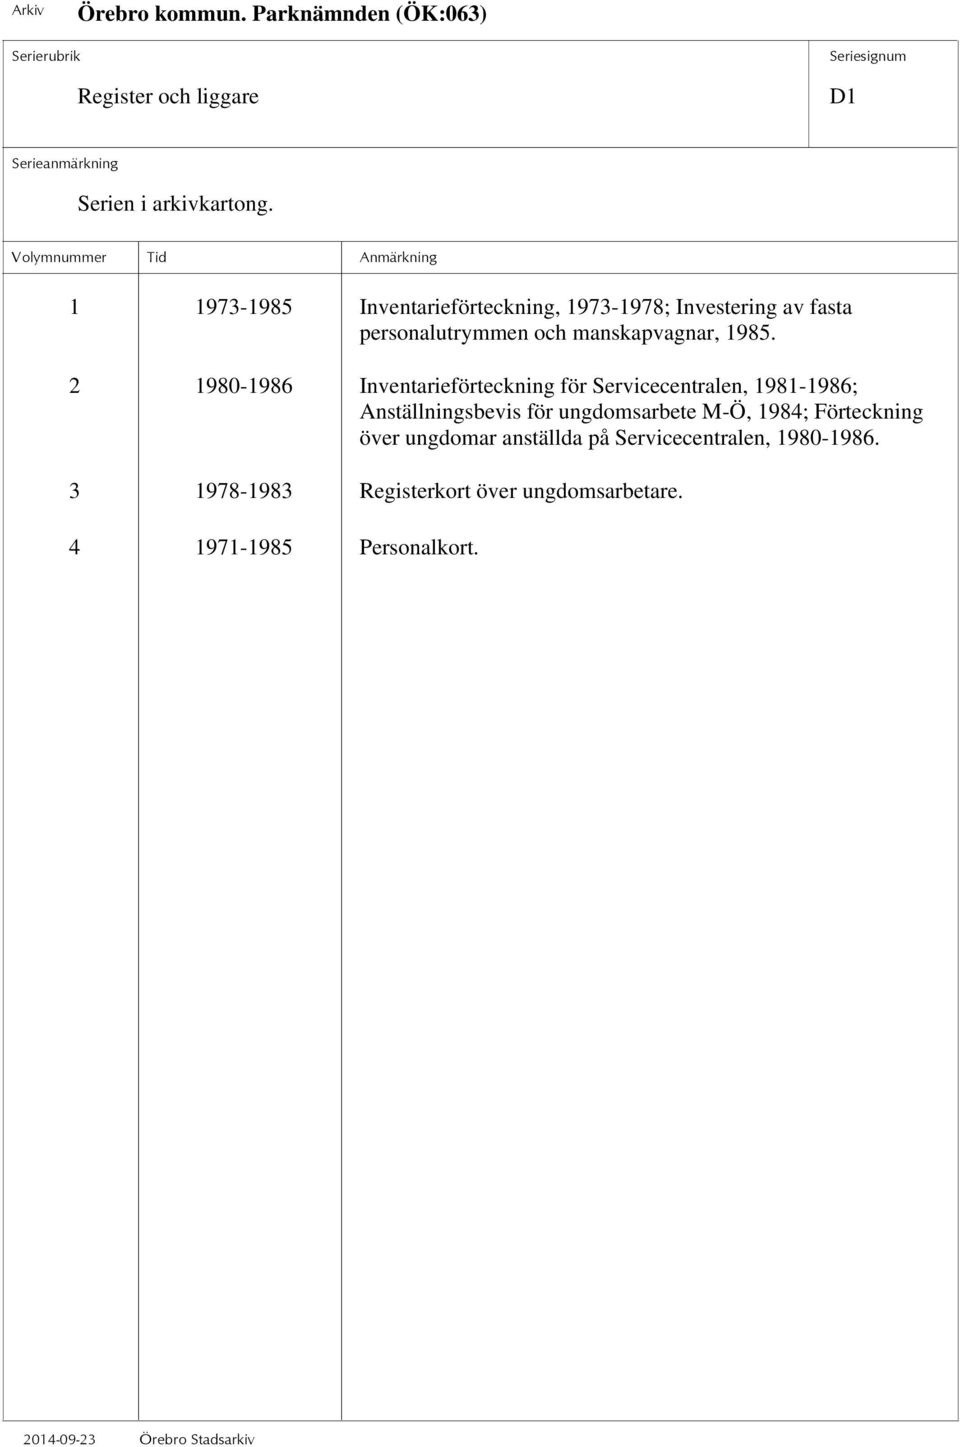 2 1980-1986 Inventarieförteckning för Servicecentralen, 1981-1986; Anställningsbevis för